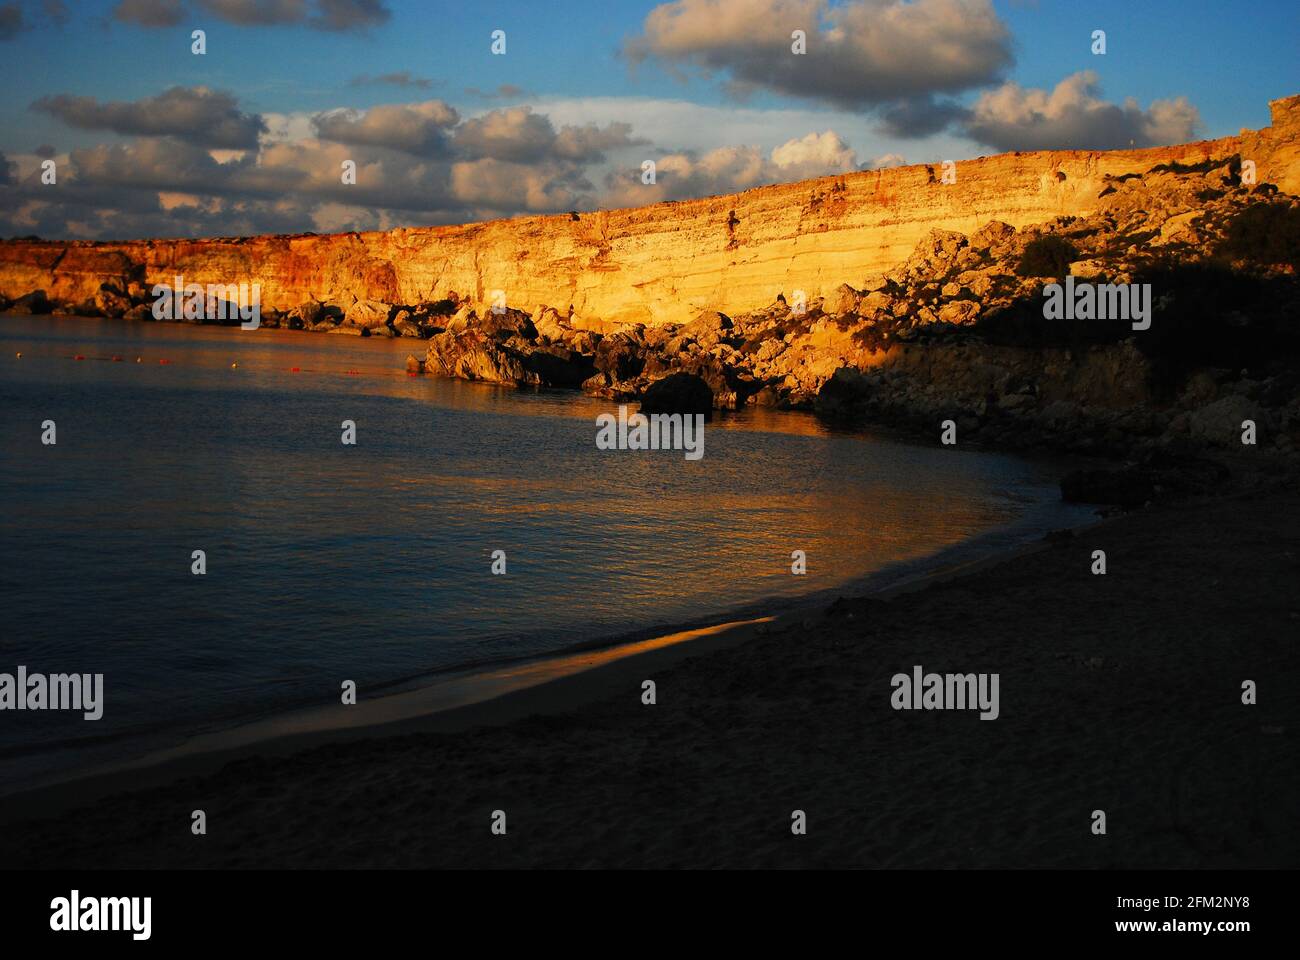 Golden sunset on the Paradise beach in Malta Stock Photo